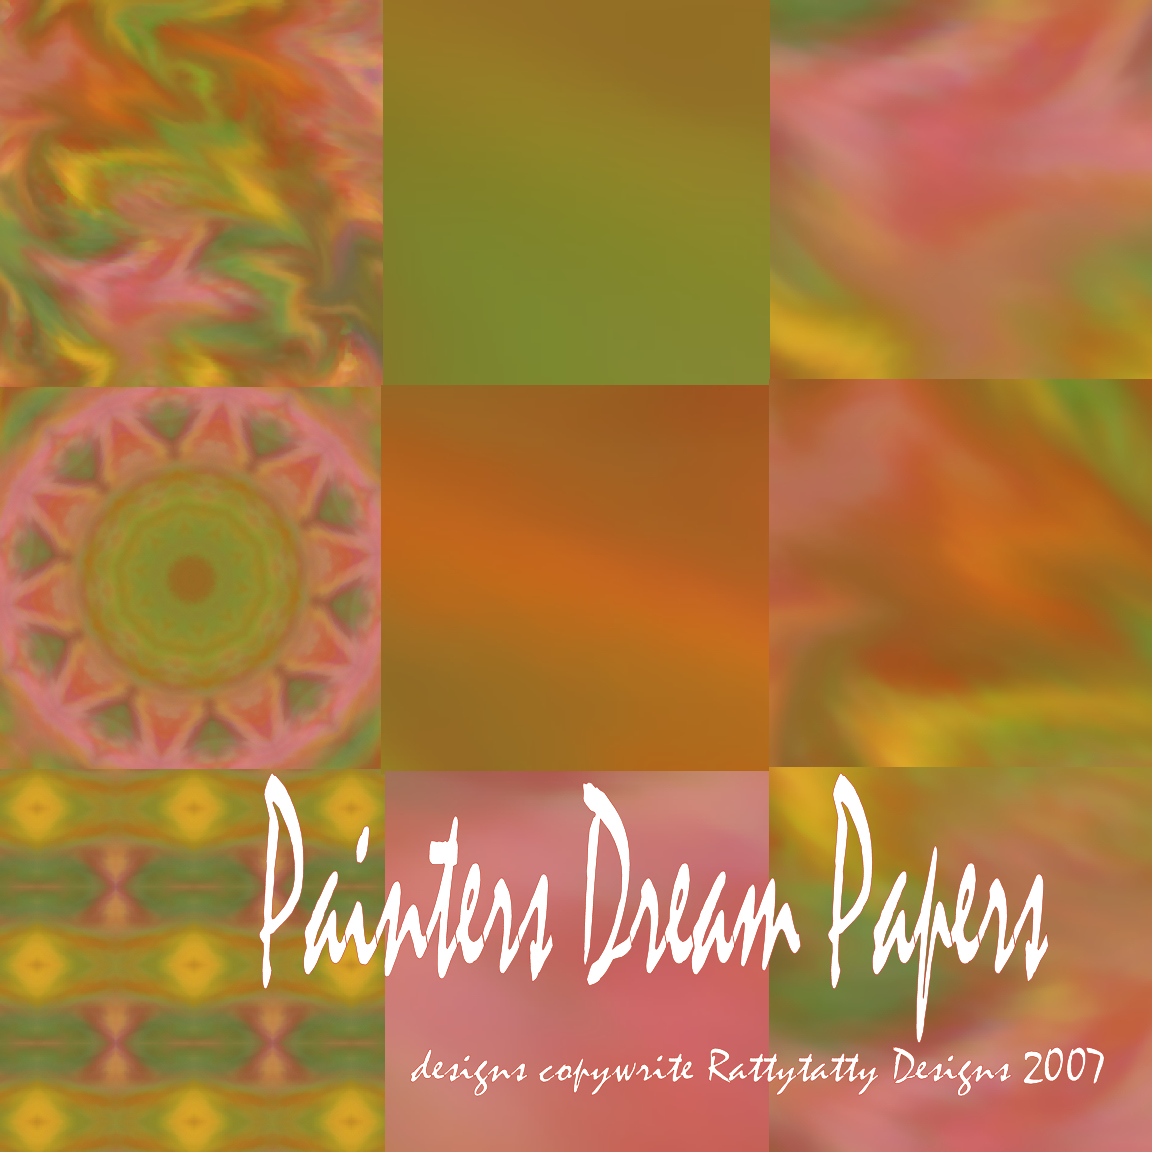 [Painters+Dream+papers.jpg]